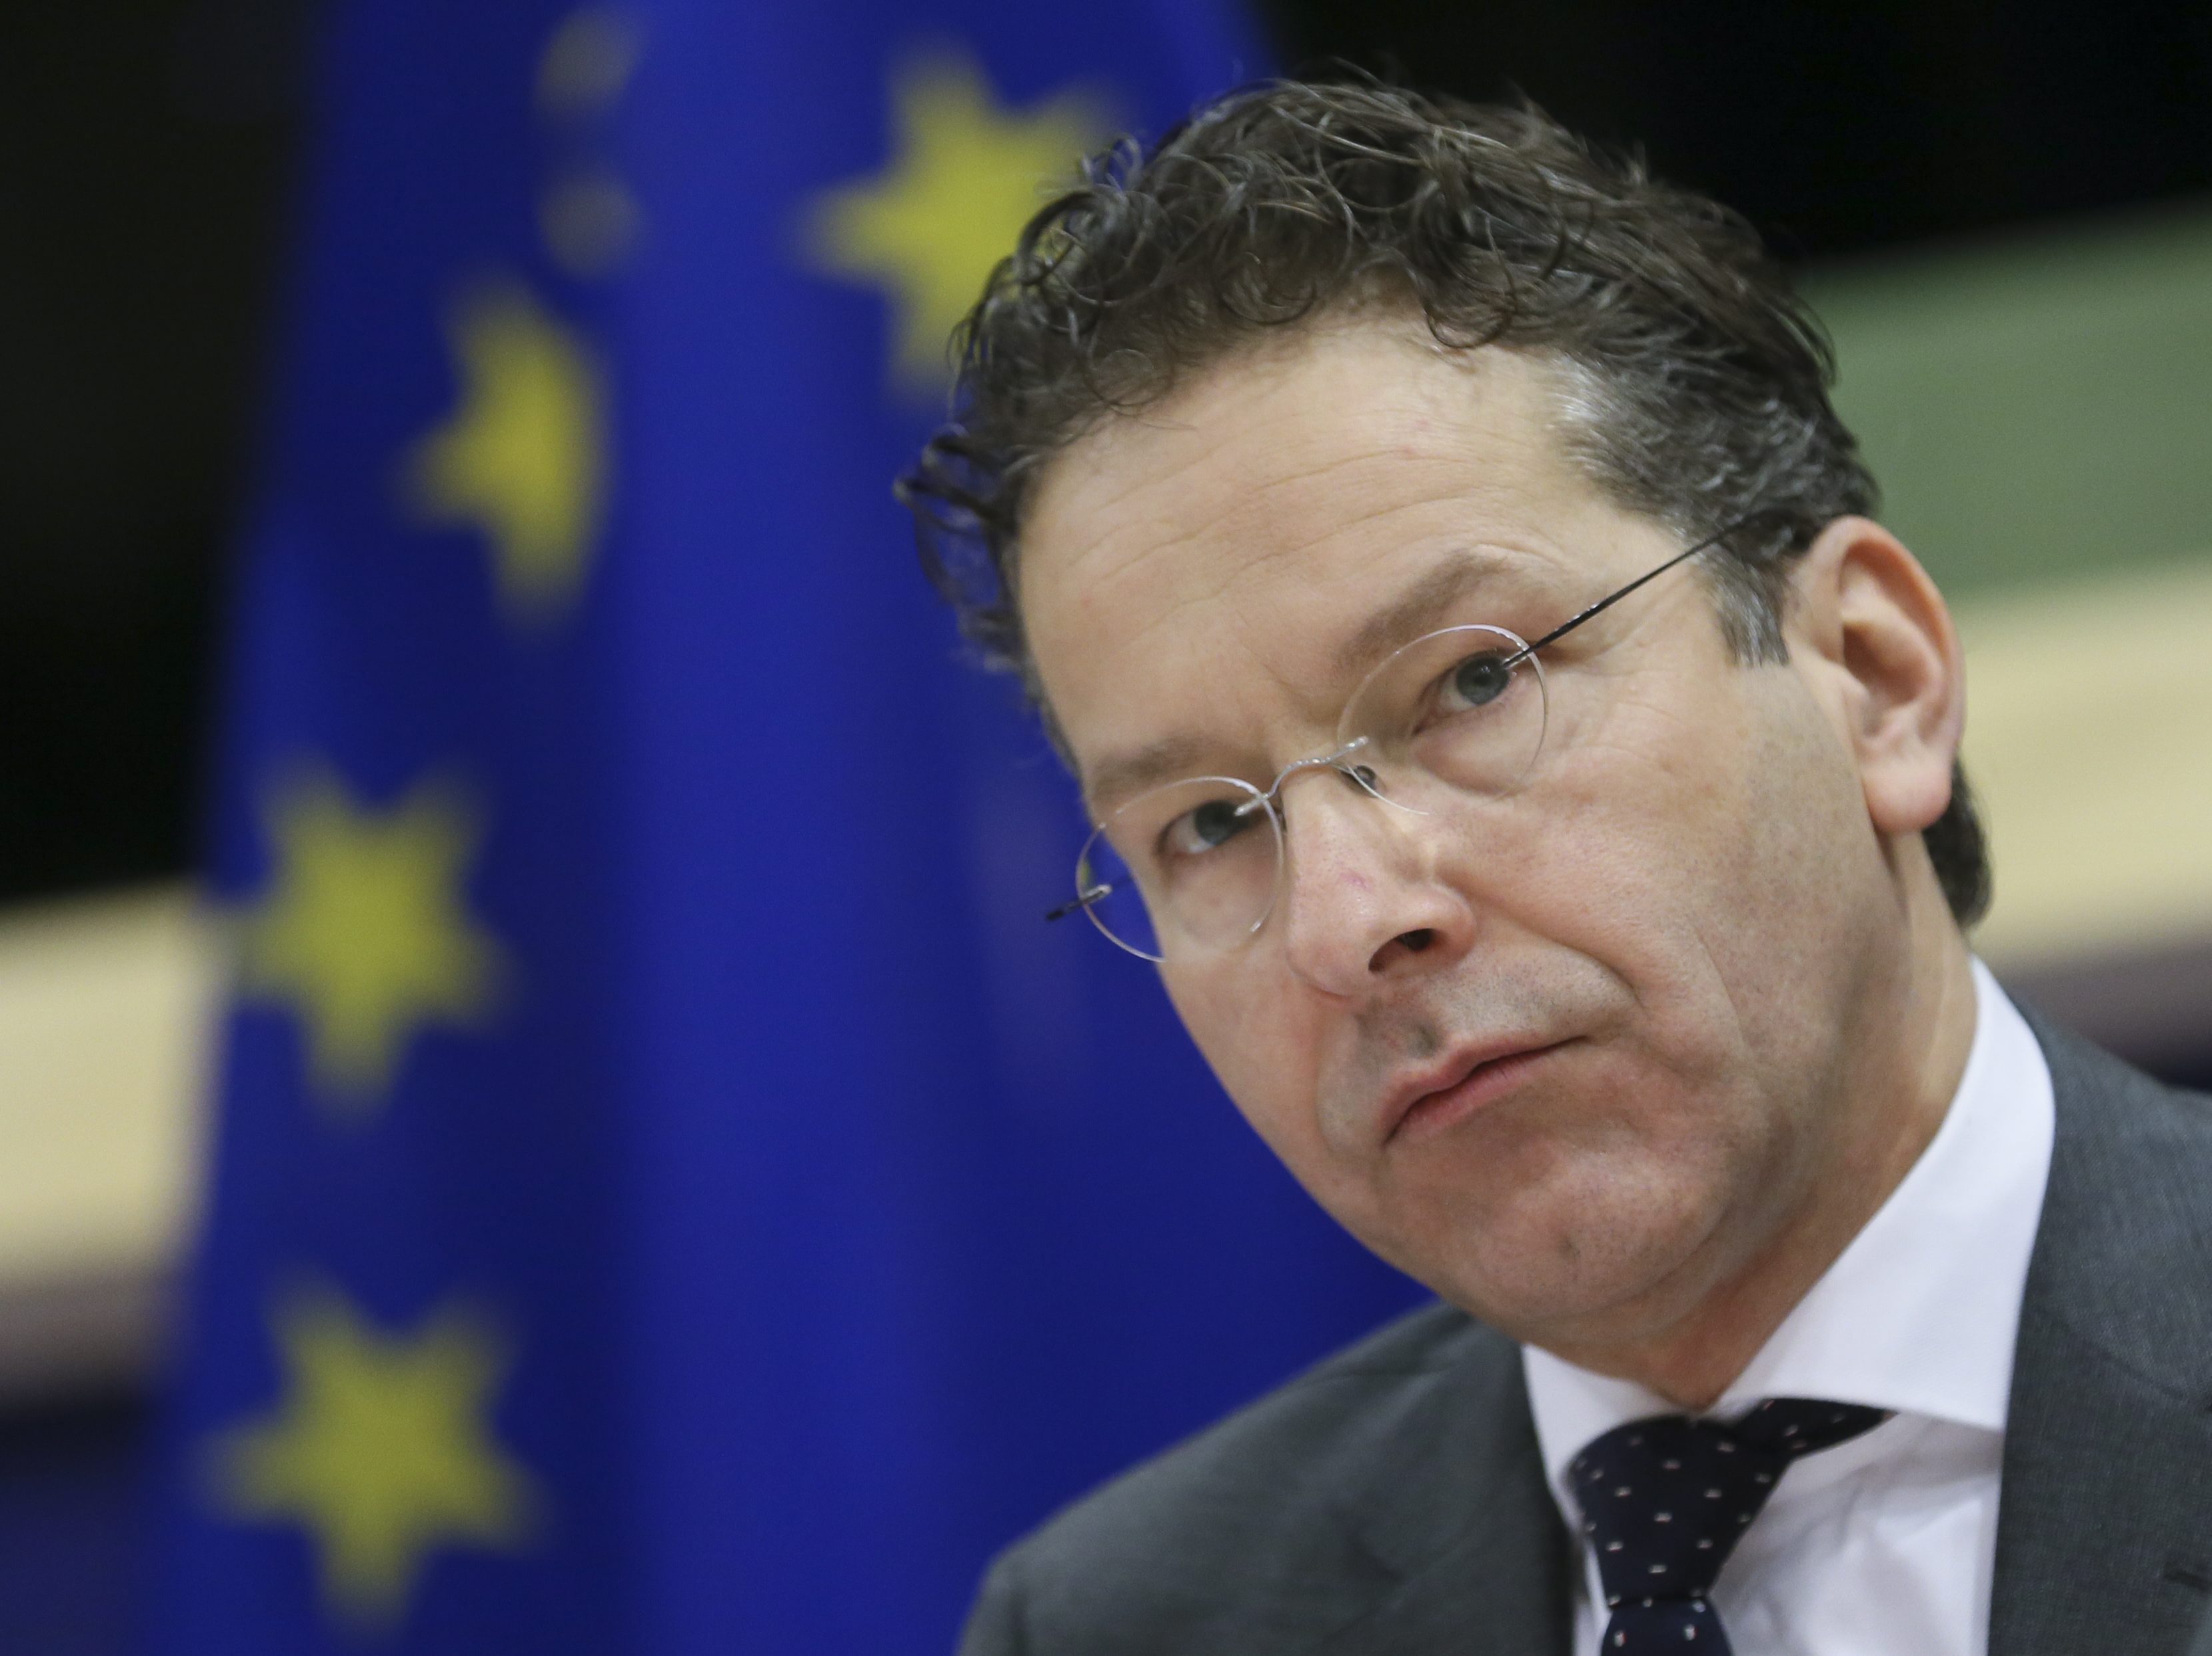 De Italiaanse minister van Economische Zaken Carlo Calenda heeft hard uitgehaald naar Jeroen Dijsselbloem. Hij vindt dat de voorzitter van de eurogroep 'een gigantische blunder' heeft gemaakt.